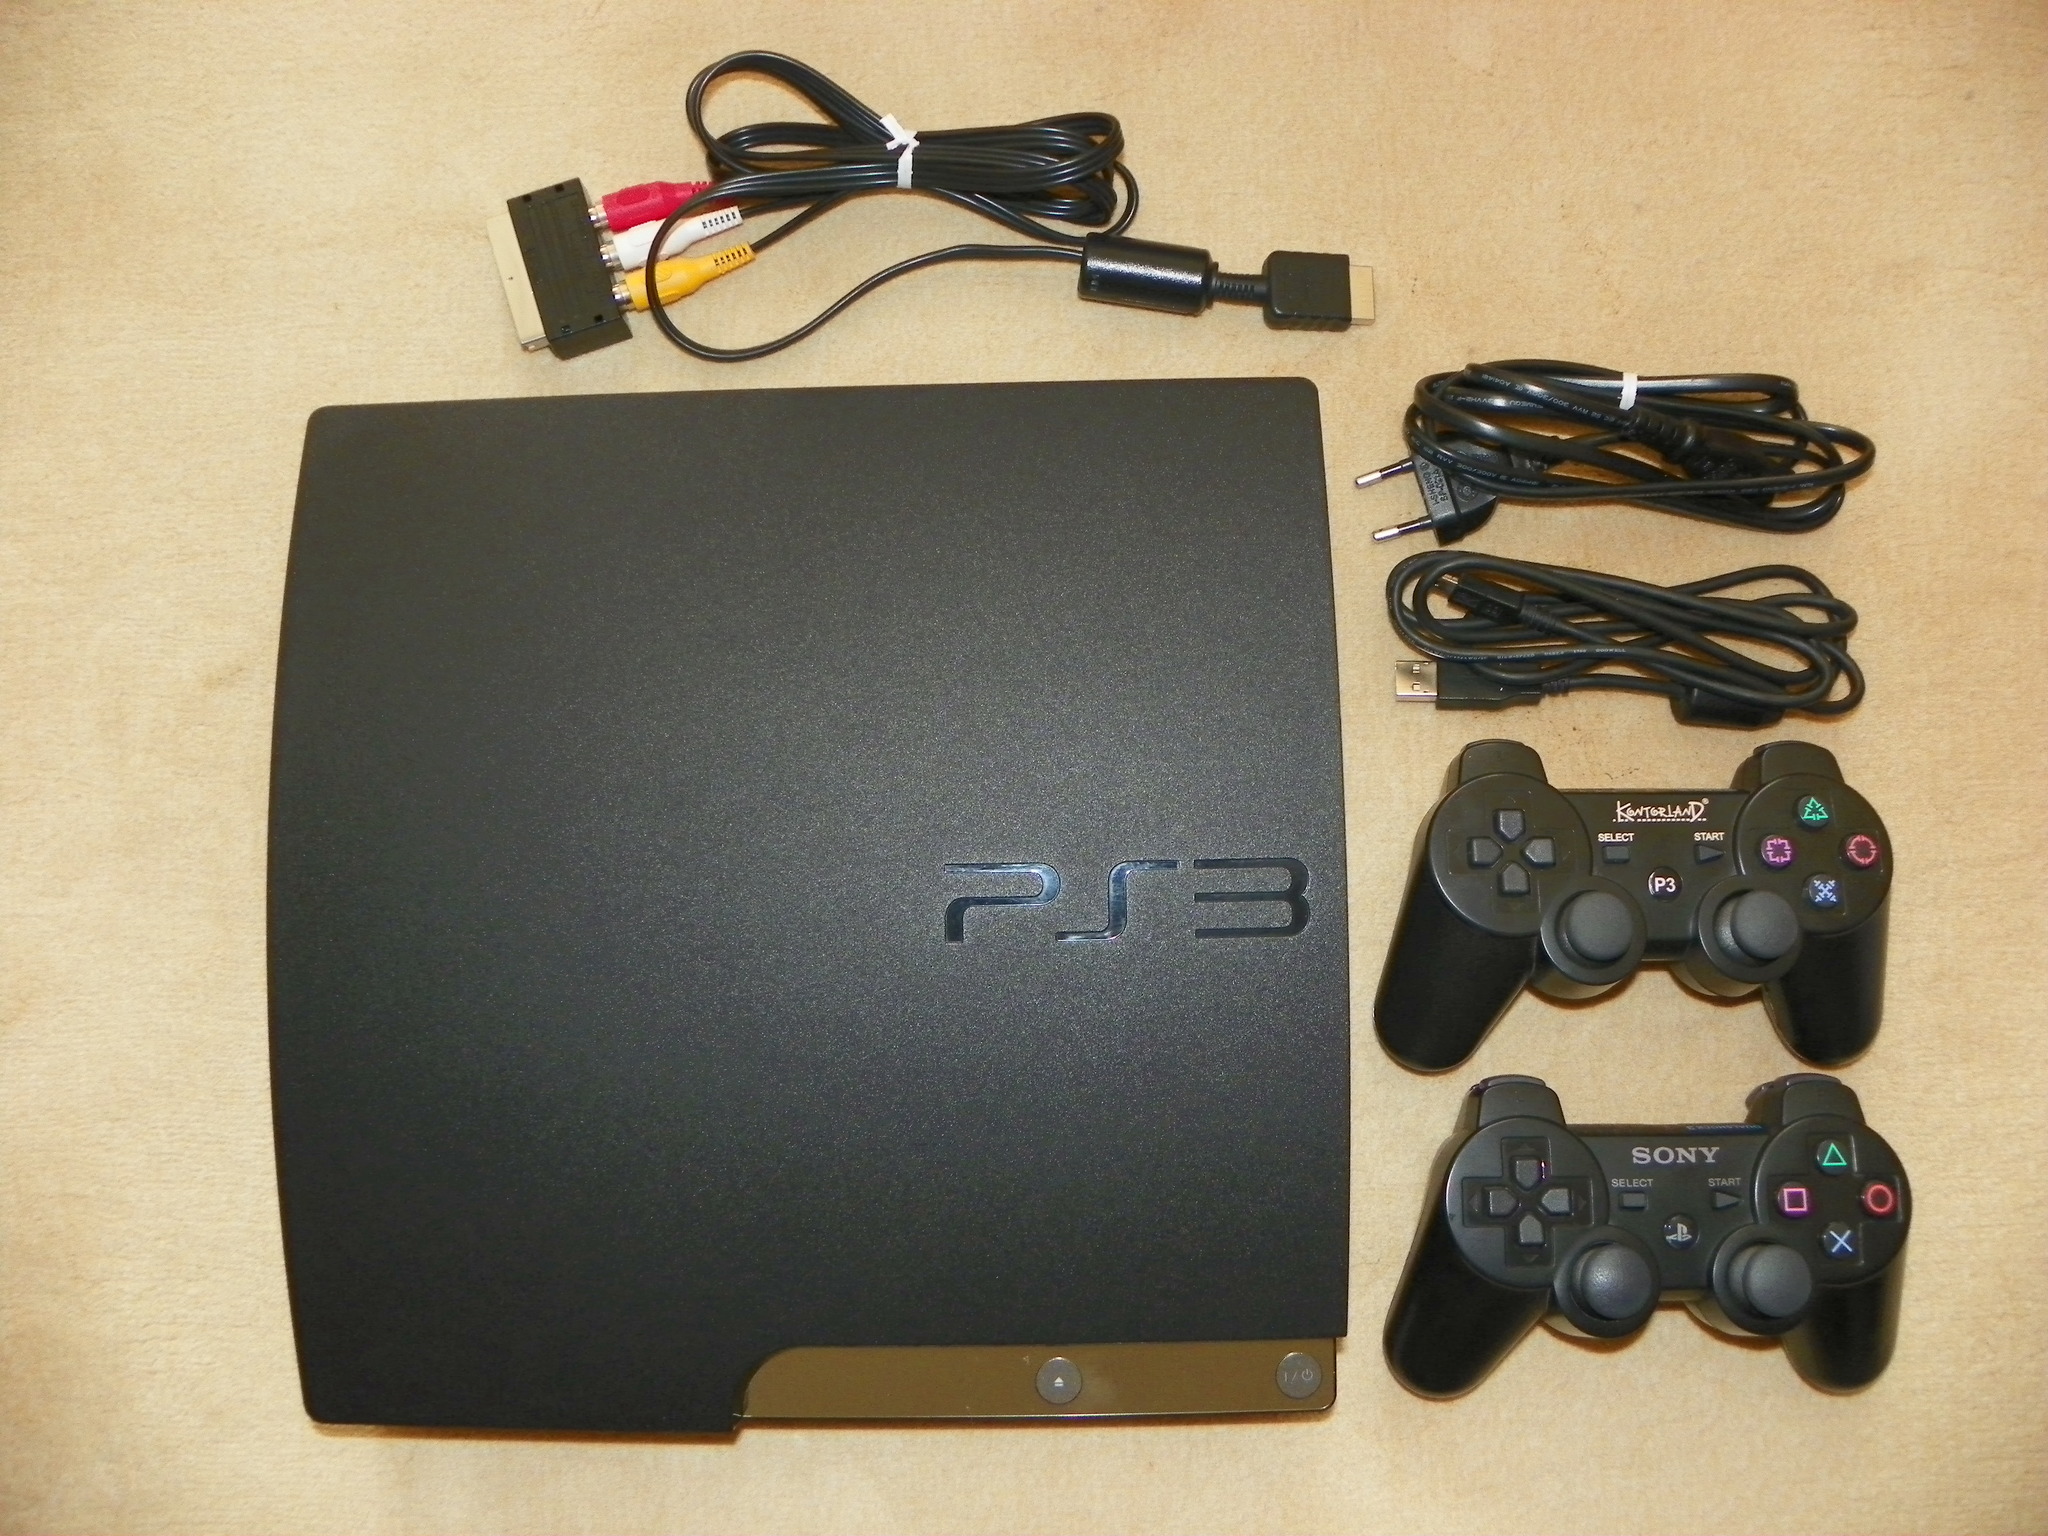  Satılık PS3 Slim 320 GB, 3 Oyun, 2. Kol, Kutulu - 430 TL